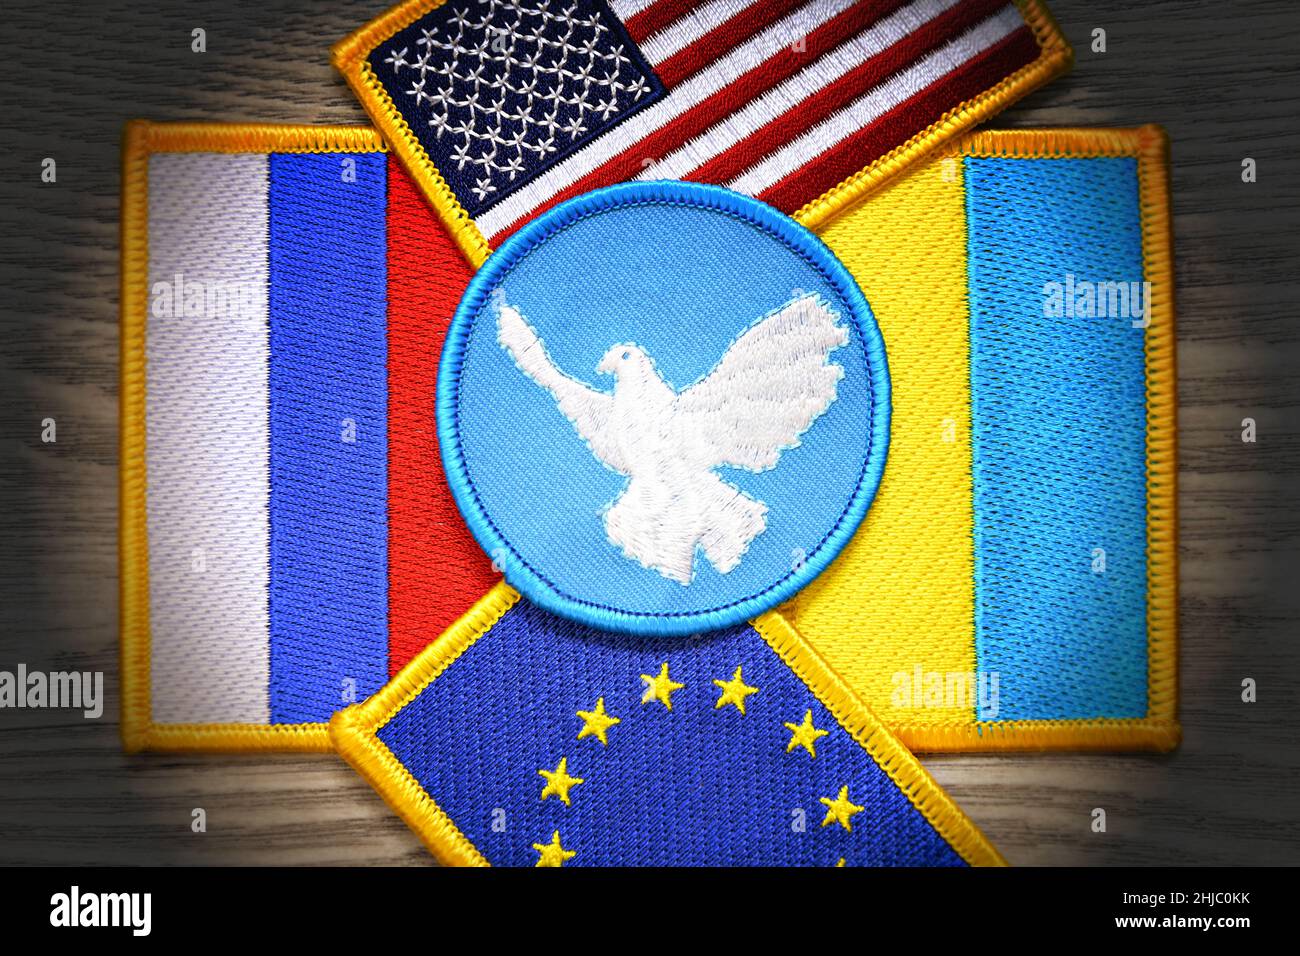 La paix est en effet patchwork sur les drapeaux de la Russie, de l’Ukraine, des États-Unis et de l’UE, ainsi que sur la crise ukrainienne Banque D'Images